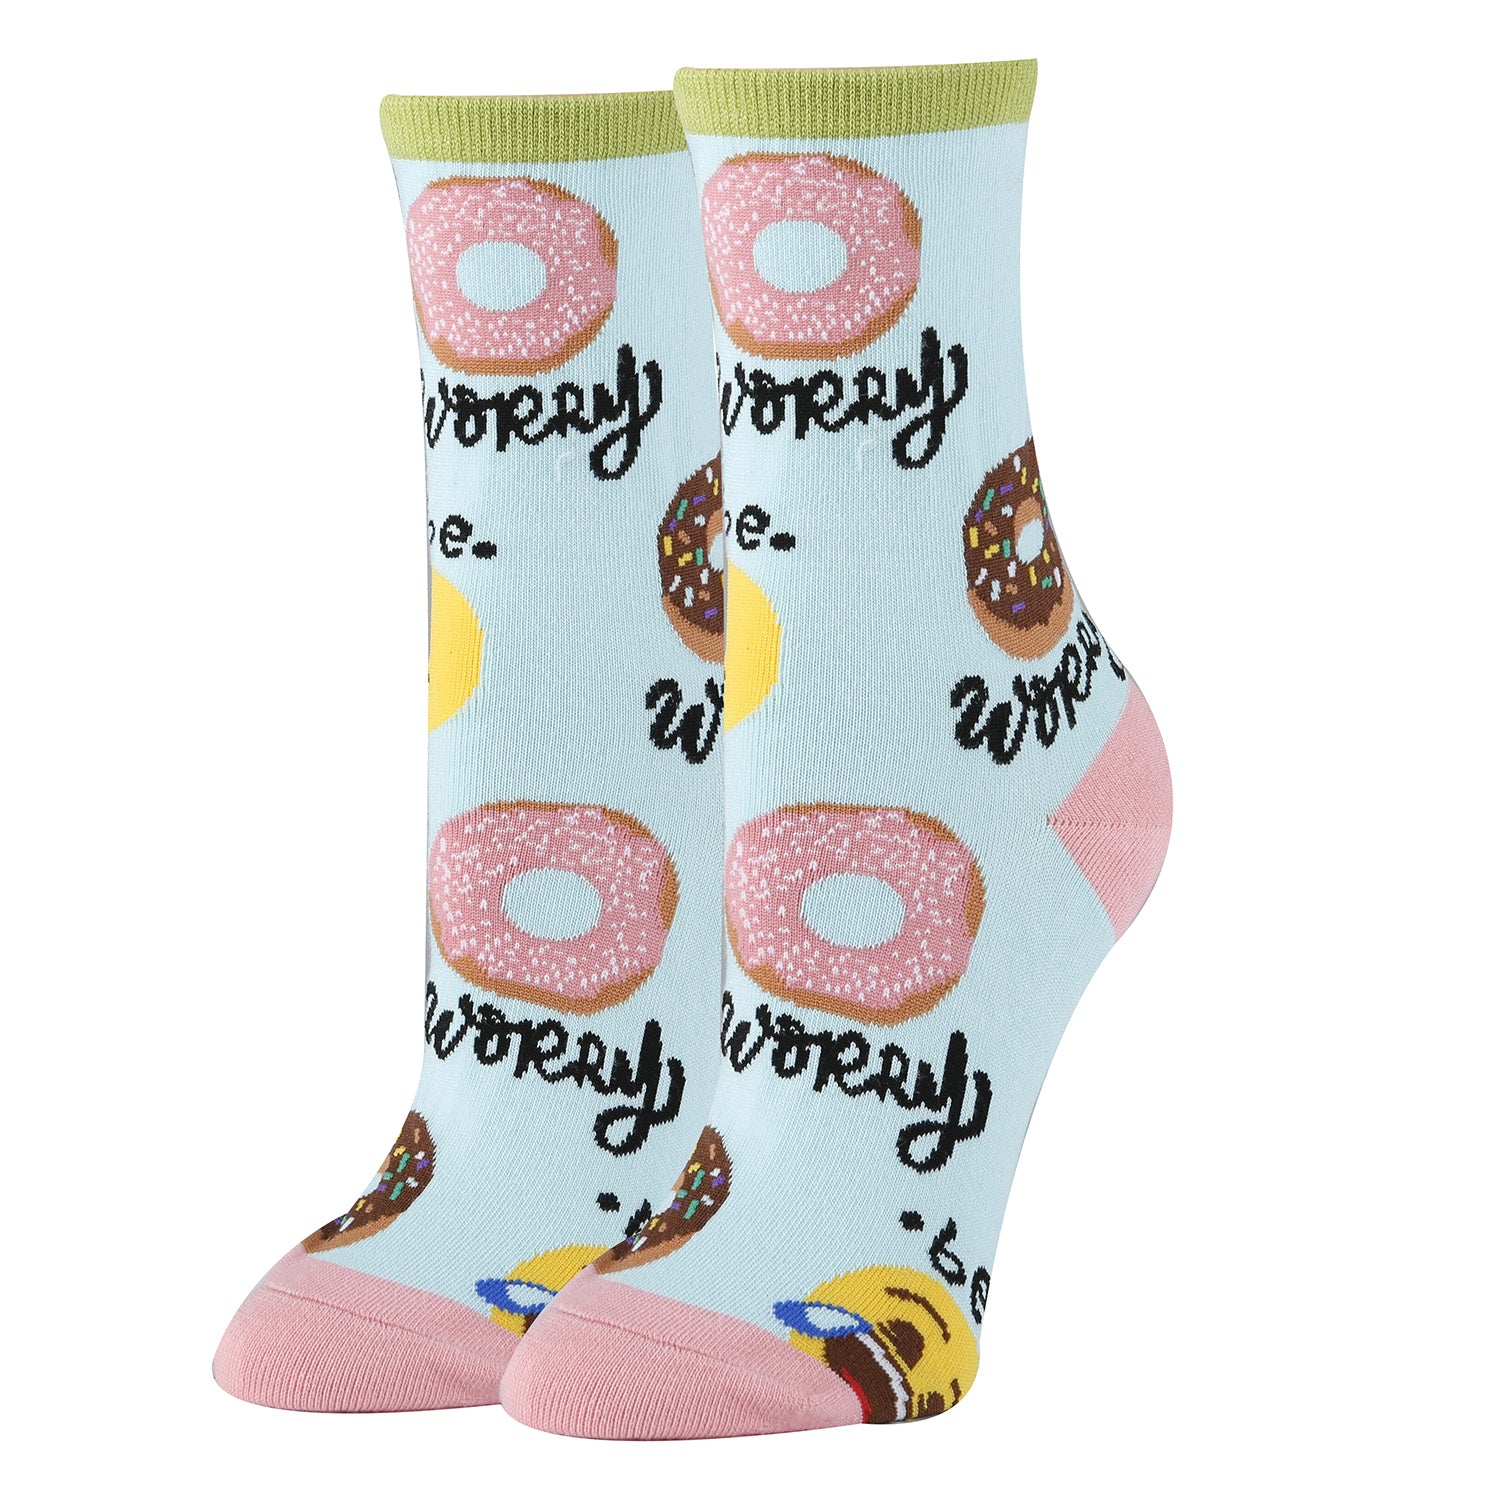 Donut Worry Socks | Novelty Crew Socks For Women